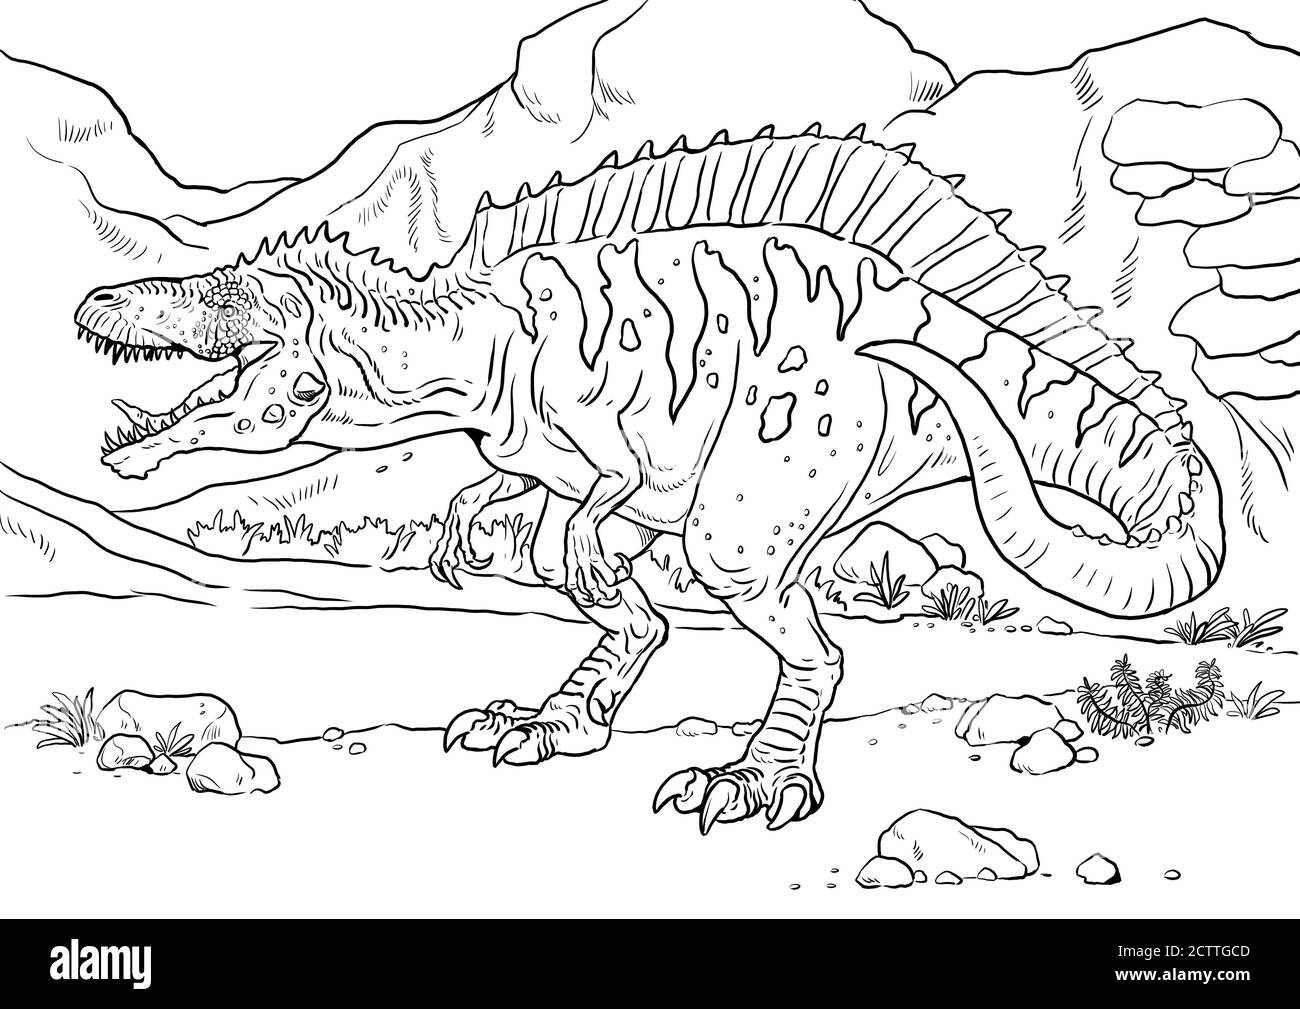 Großer fleischfressender Dinosaurier - Acrocanthosaurus. Dino